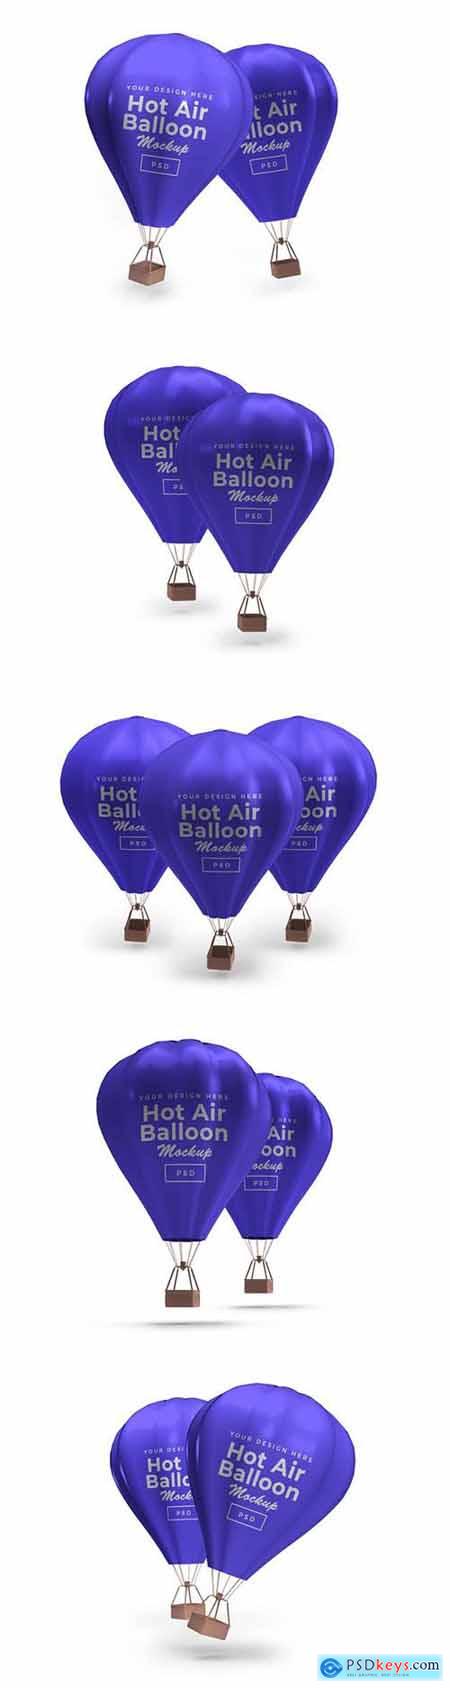 Hot air balloon mockup 2